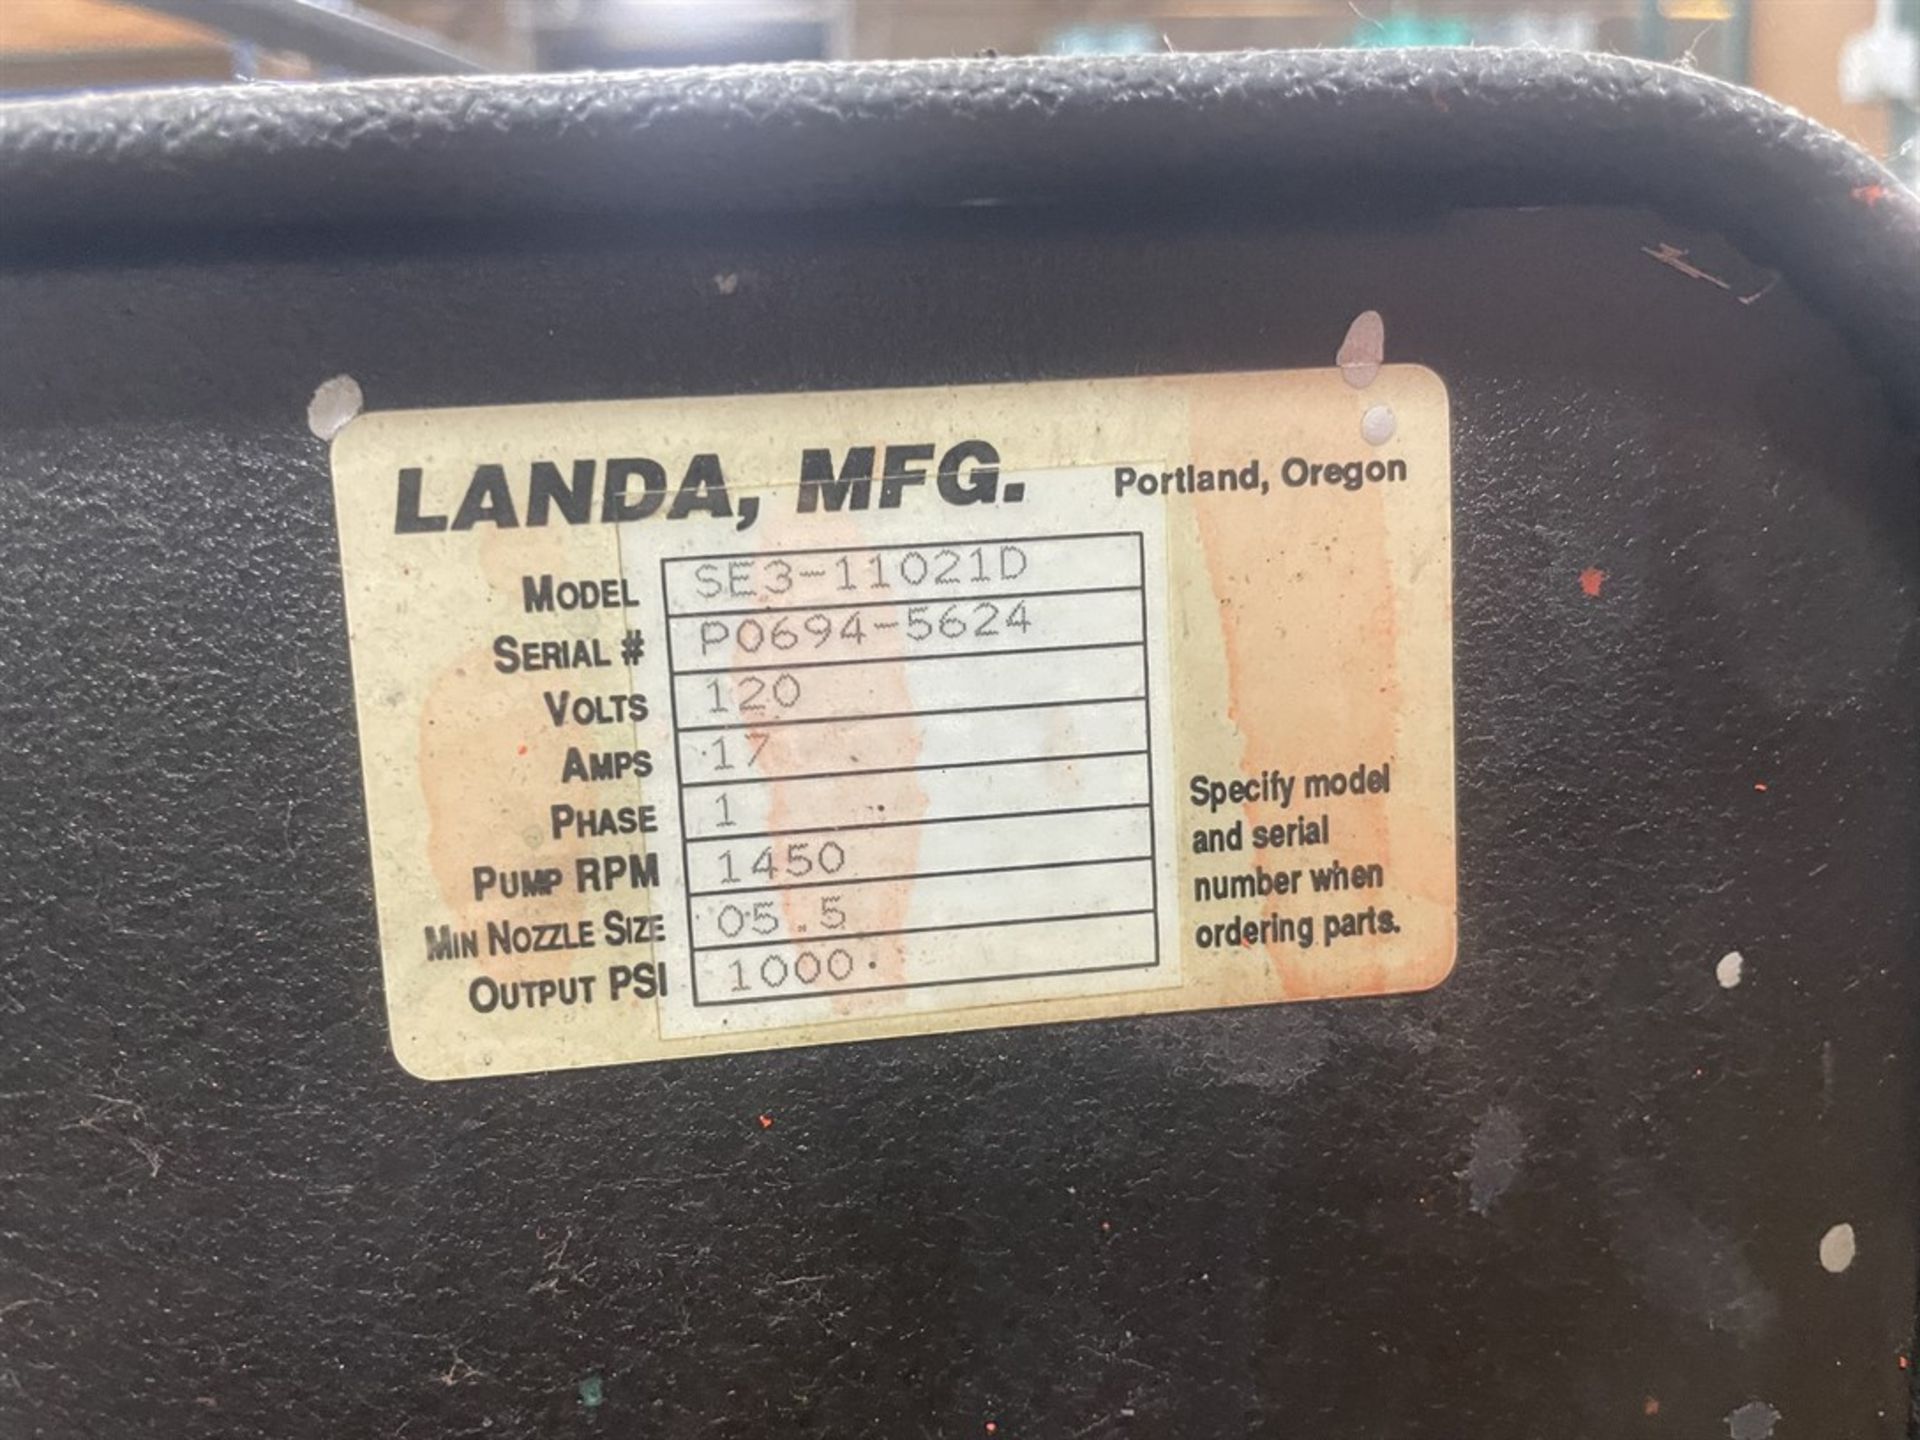 LANDA SE3-11021D High Pressure Washer - Image 2 of 2